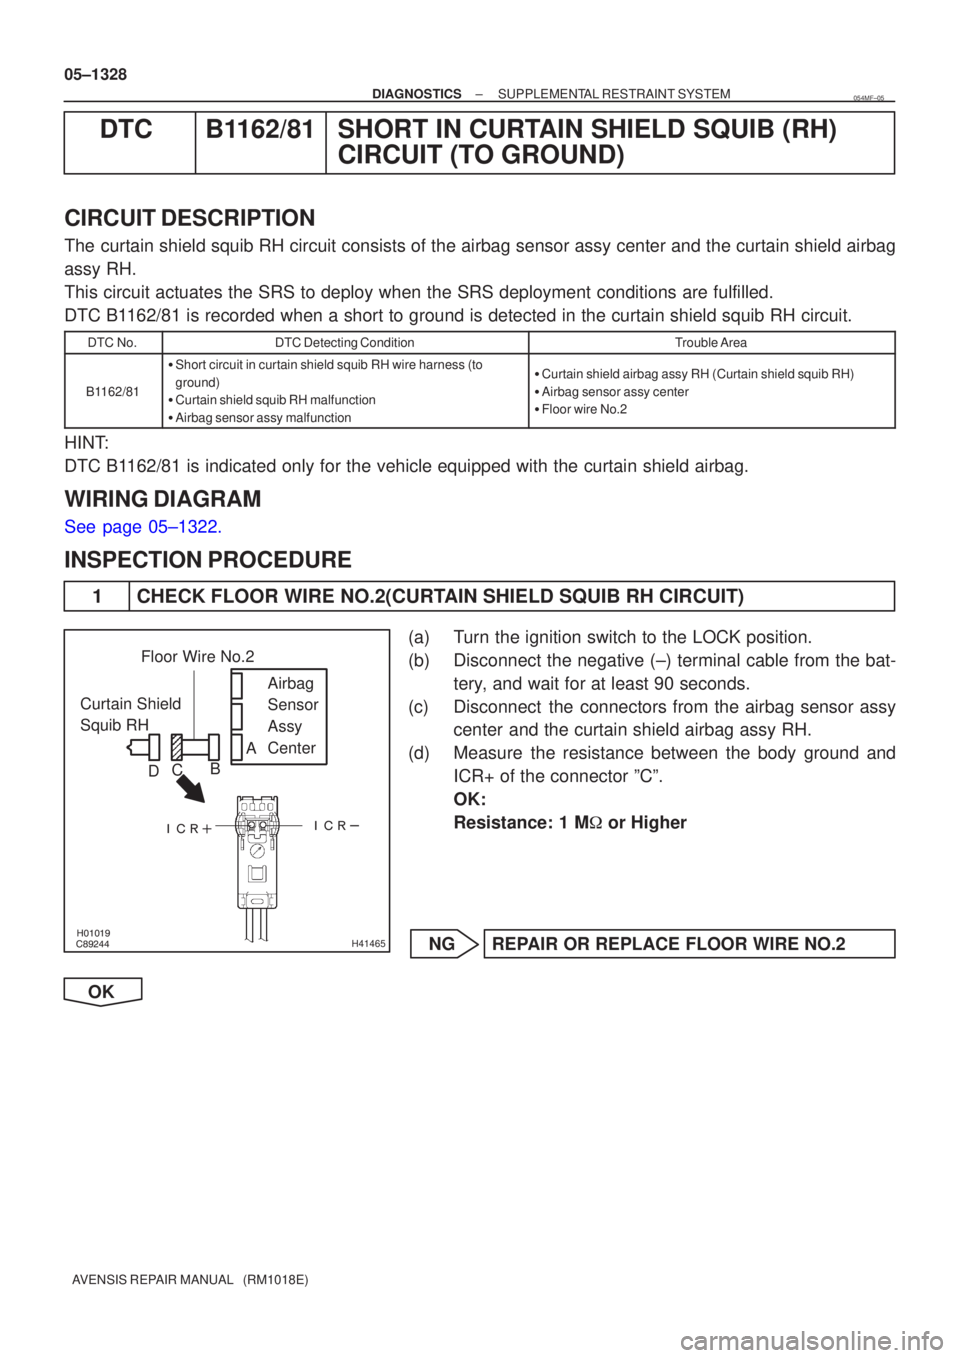 TOYOTA AVENSIS 2005  Service Repair Manual \b



H41465
Curtain Shield 
Squib RH Airbag 
Sensor 
Assy
Center
Floor Wire No.2
A
B
C
D
05±1328
±
DIAGNOSTICS SUPPLEMENTAL RESTRAINT SYSTEM
AVENSIS REPAIR MANUAL   (RM1018E)
DTC